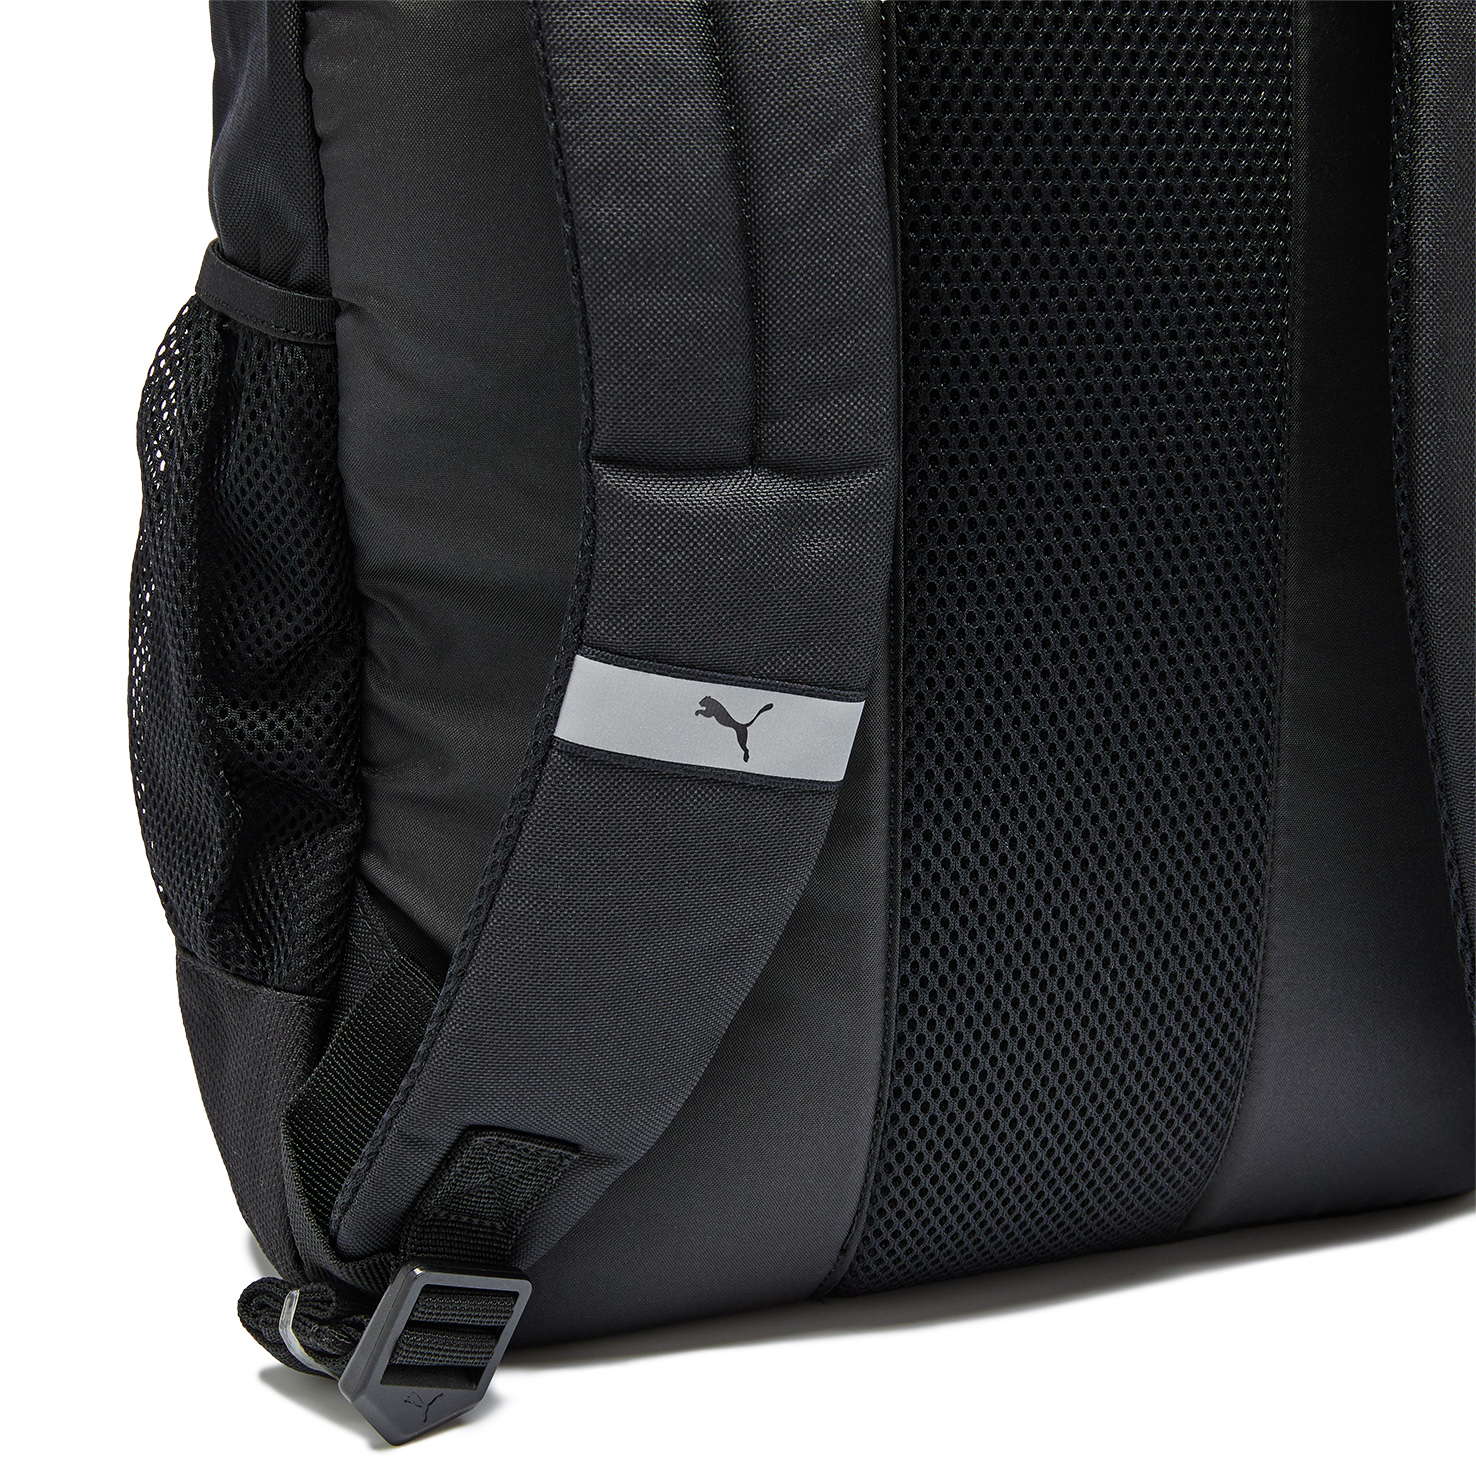 Deck Backpack PUMA, размер Один размер, цвет черный PM074706 - фото 5